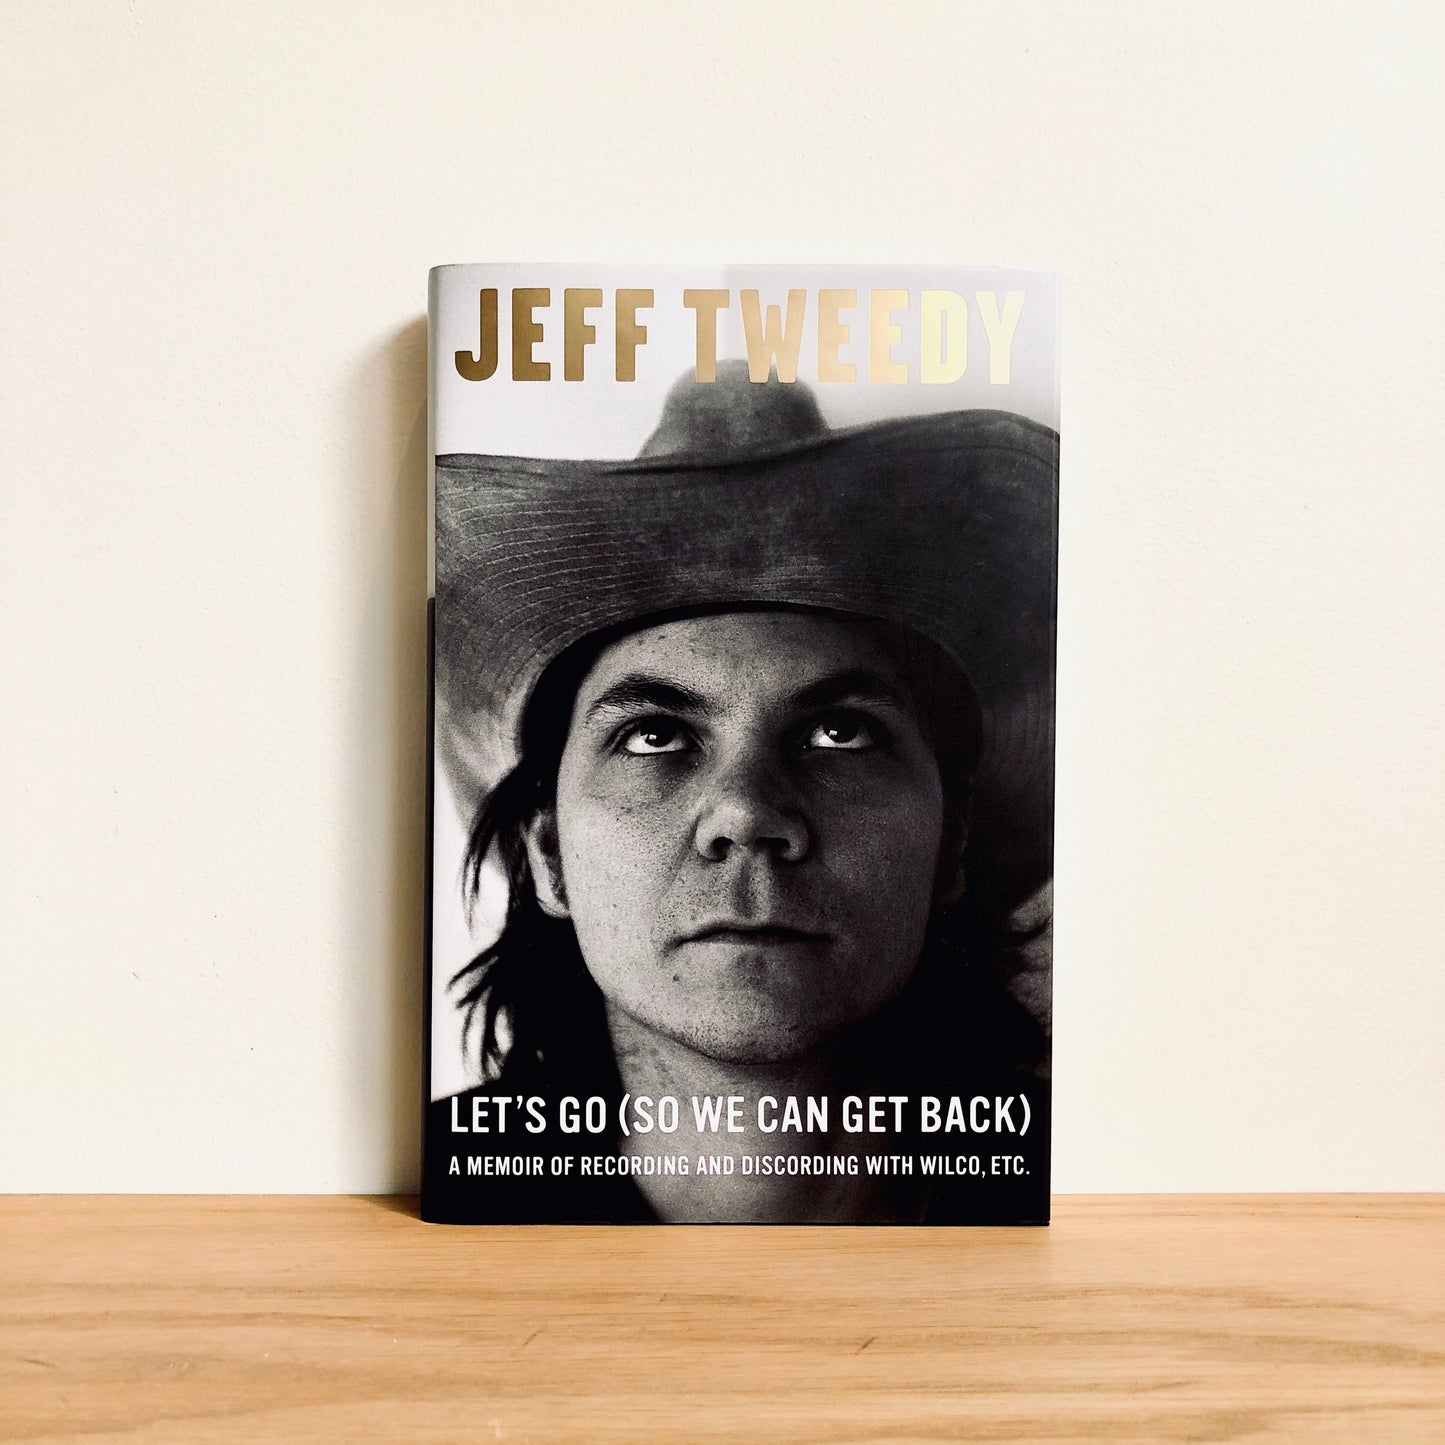 Jeff Tweedy - Let's Go (So We Can Get Back)